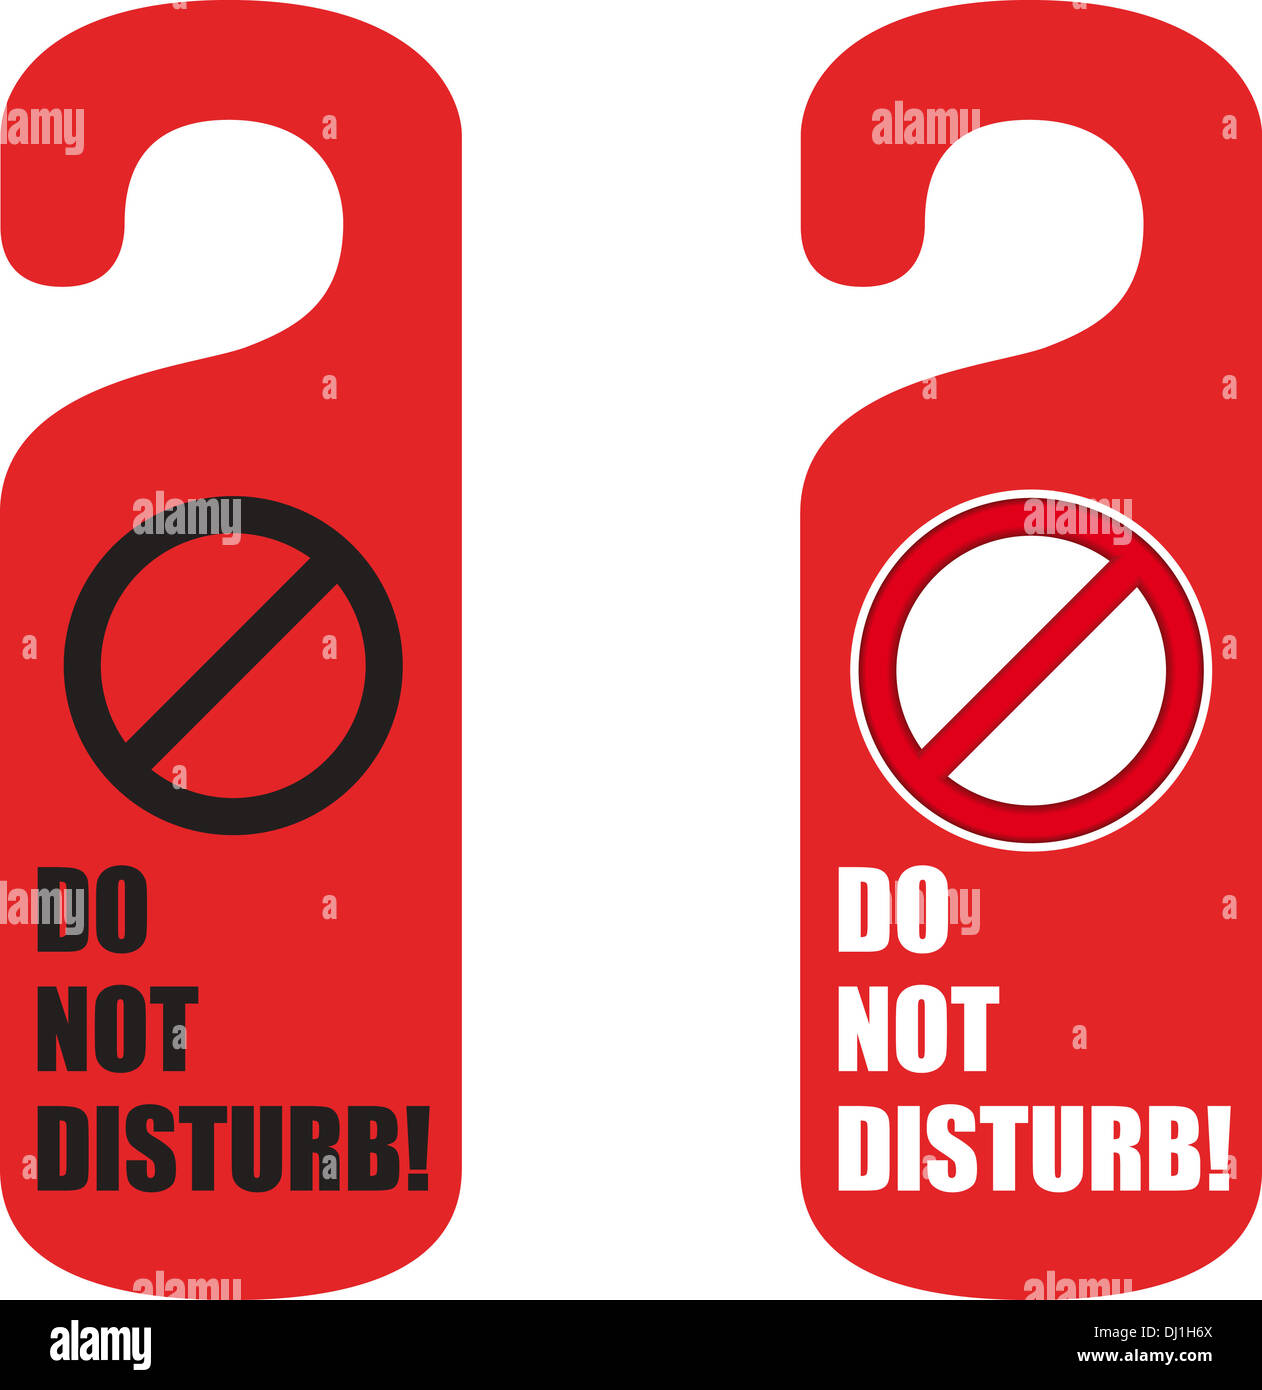 do not disturb door hanger Stock Photo